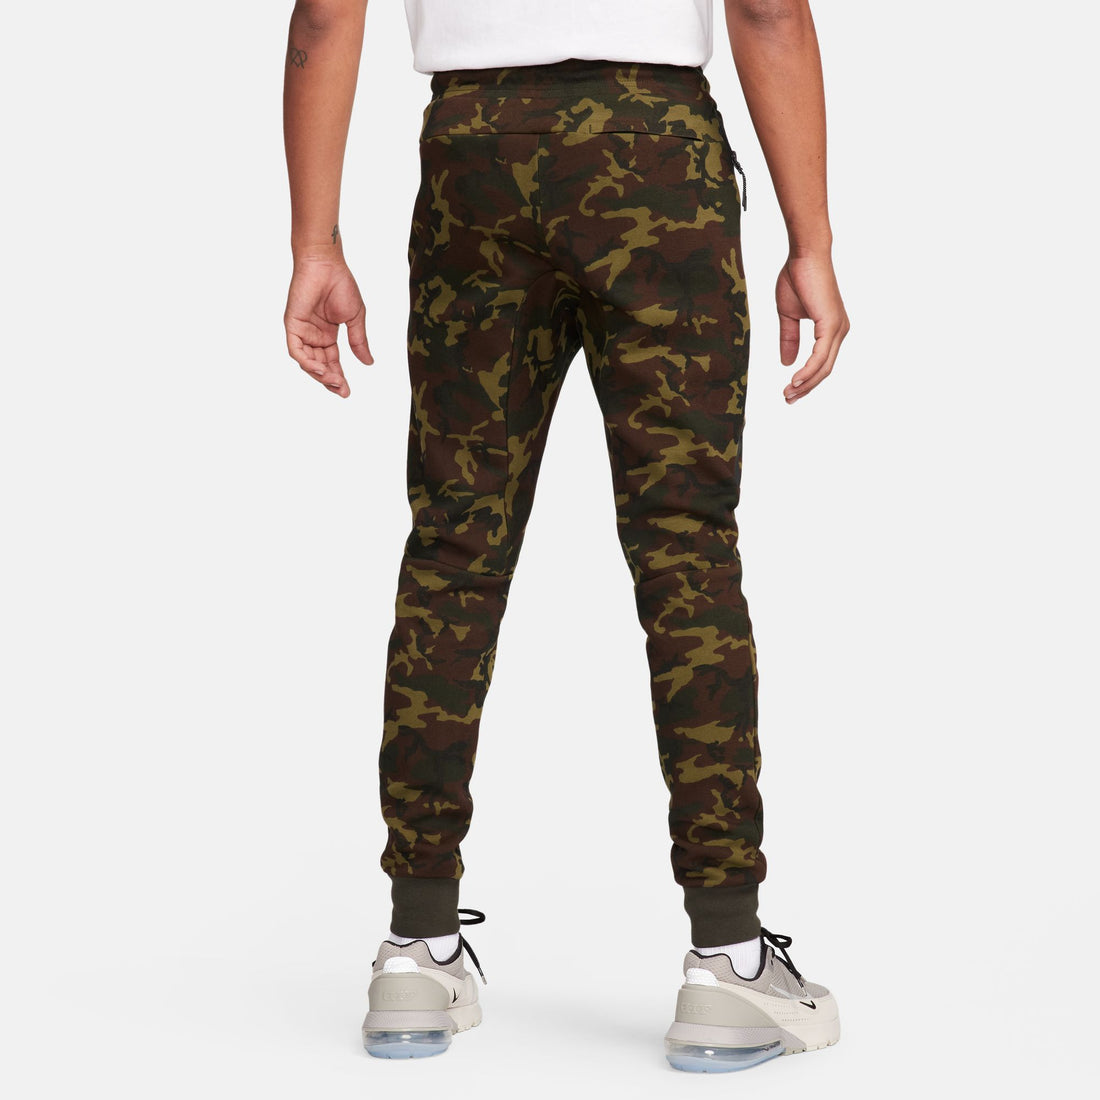 Nike Sportswear Tech Fleece OG Slim Fit Joggers (Sequoia/Black)